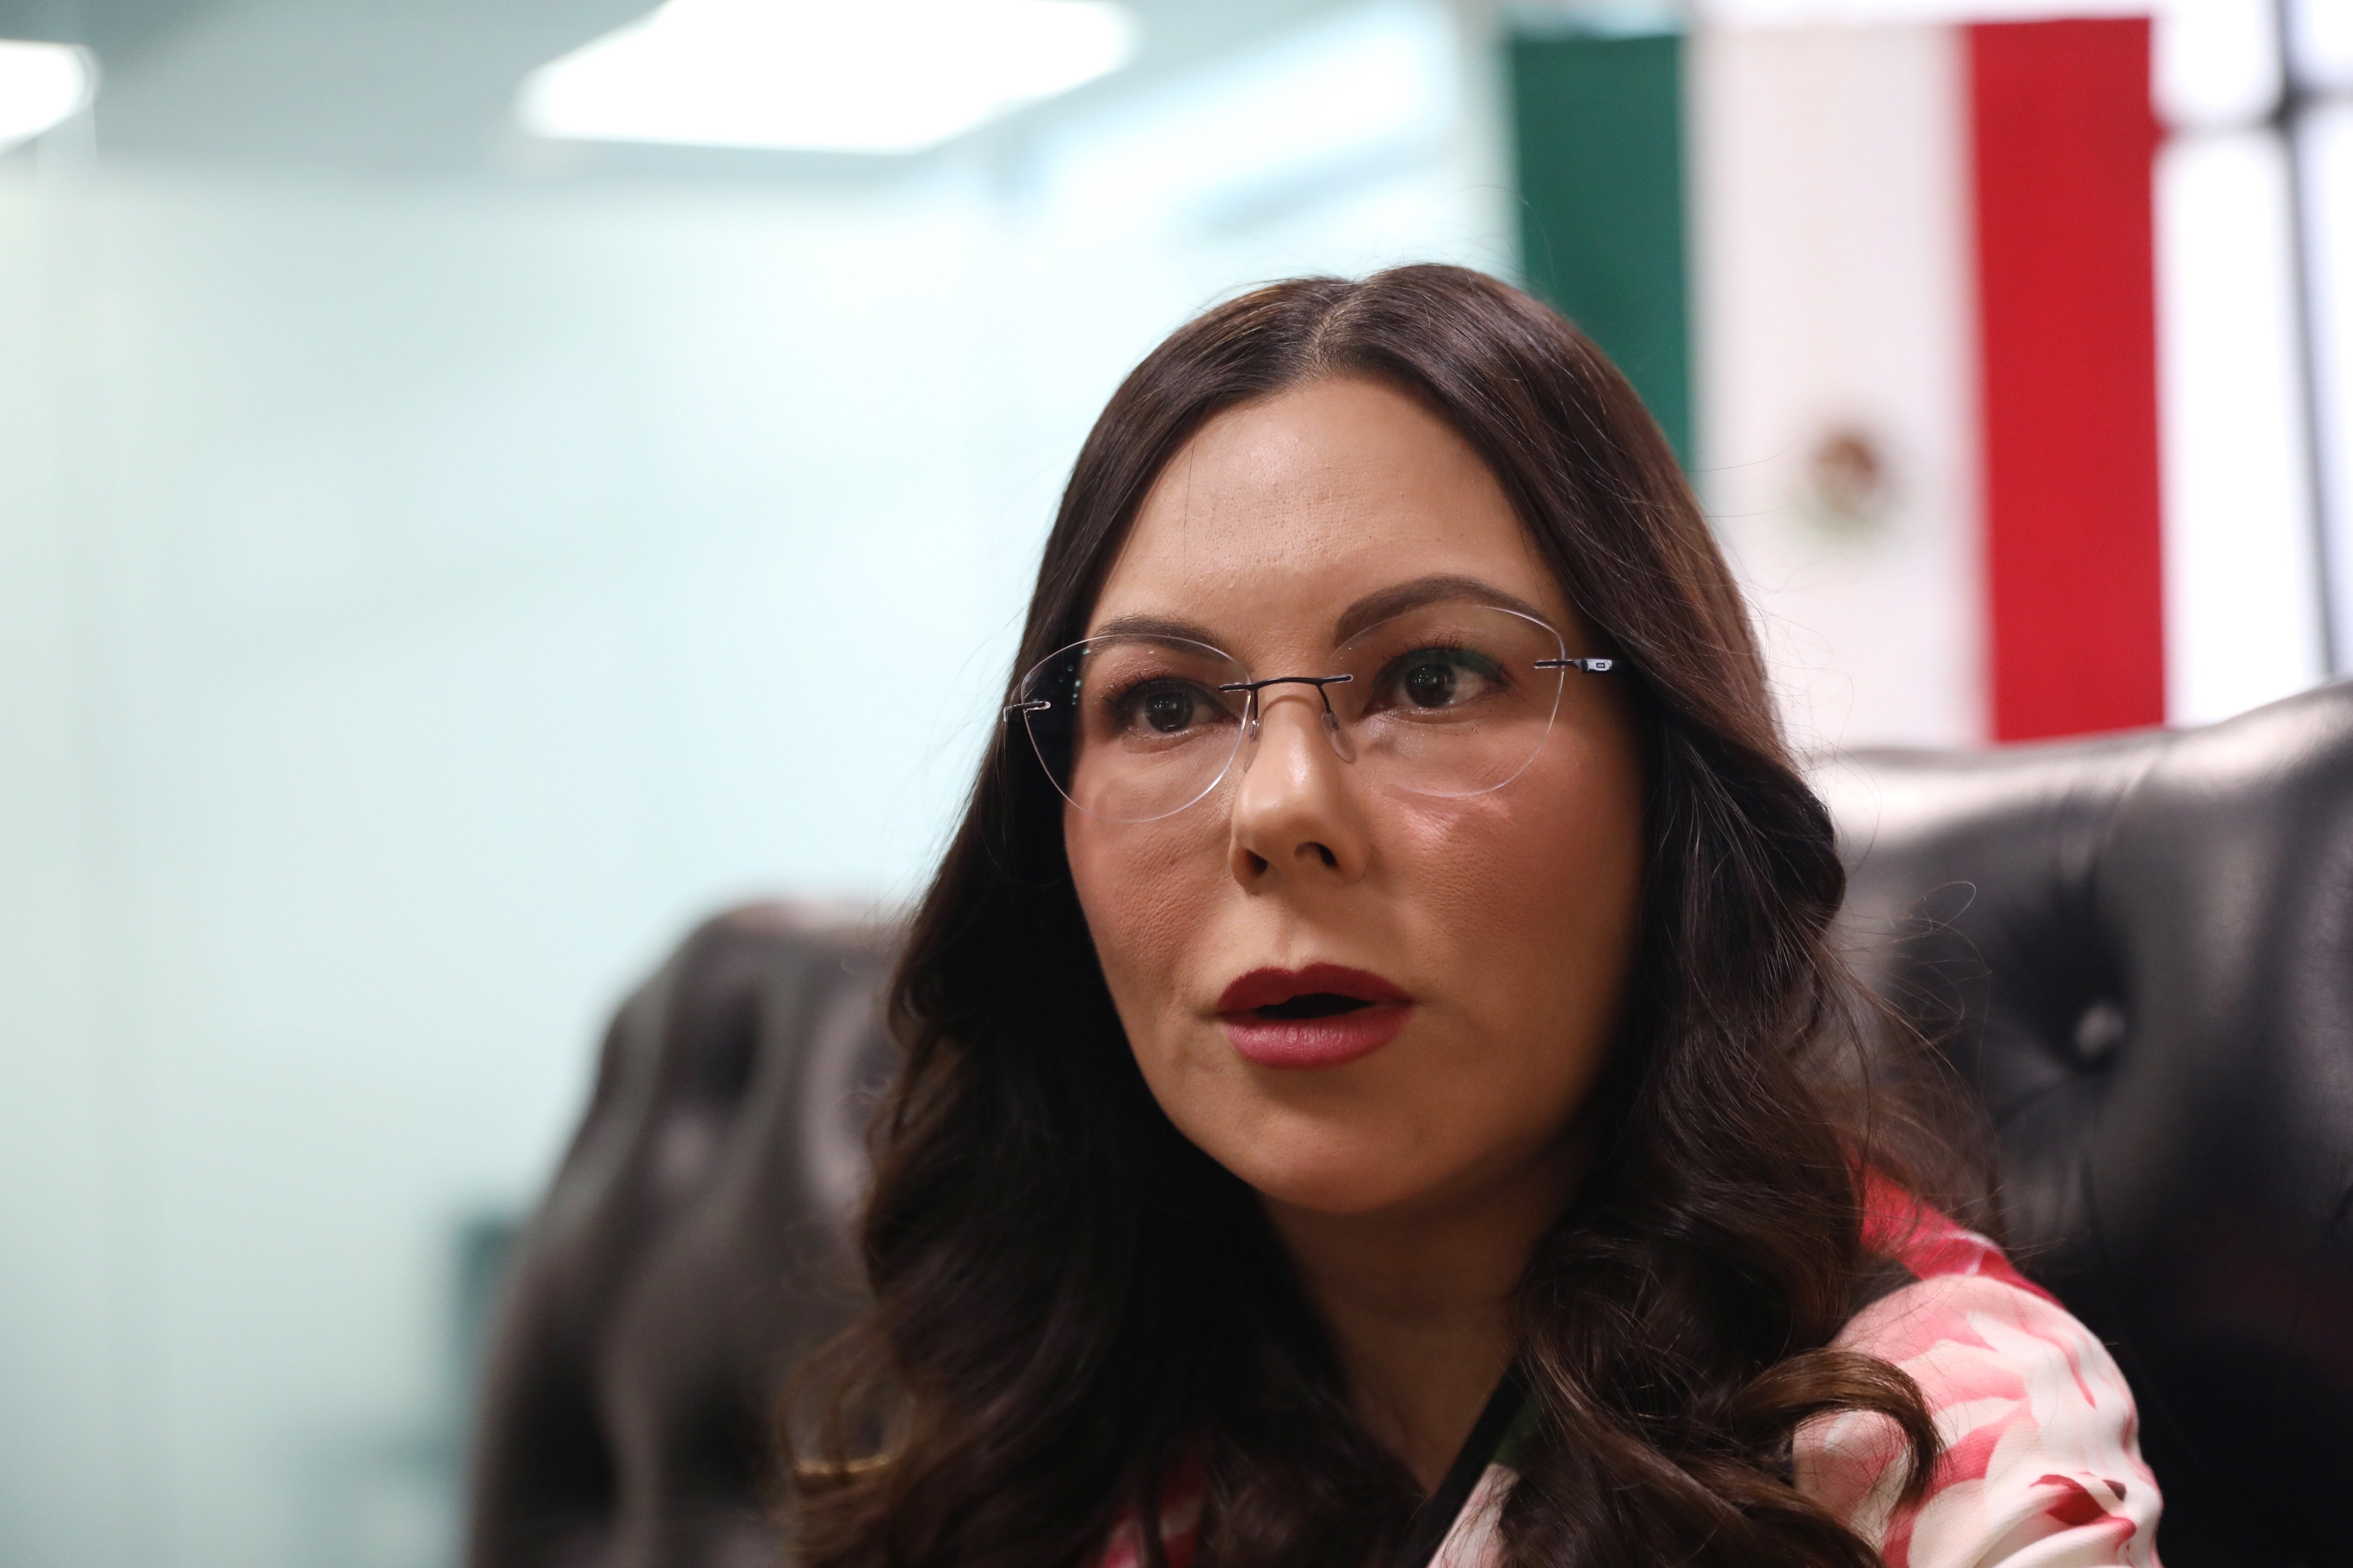 Laura Rojas del PAN criticó que le dieran facultades regulatorias a la Conadic y no a Cofepris, que tiene experiencia en el tema (Foto: Sáshenka Gutiérrez/ EFE)
